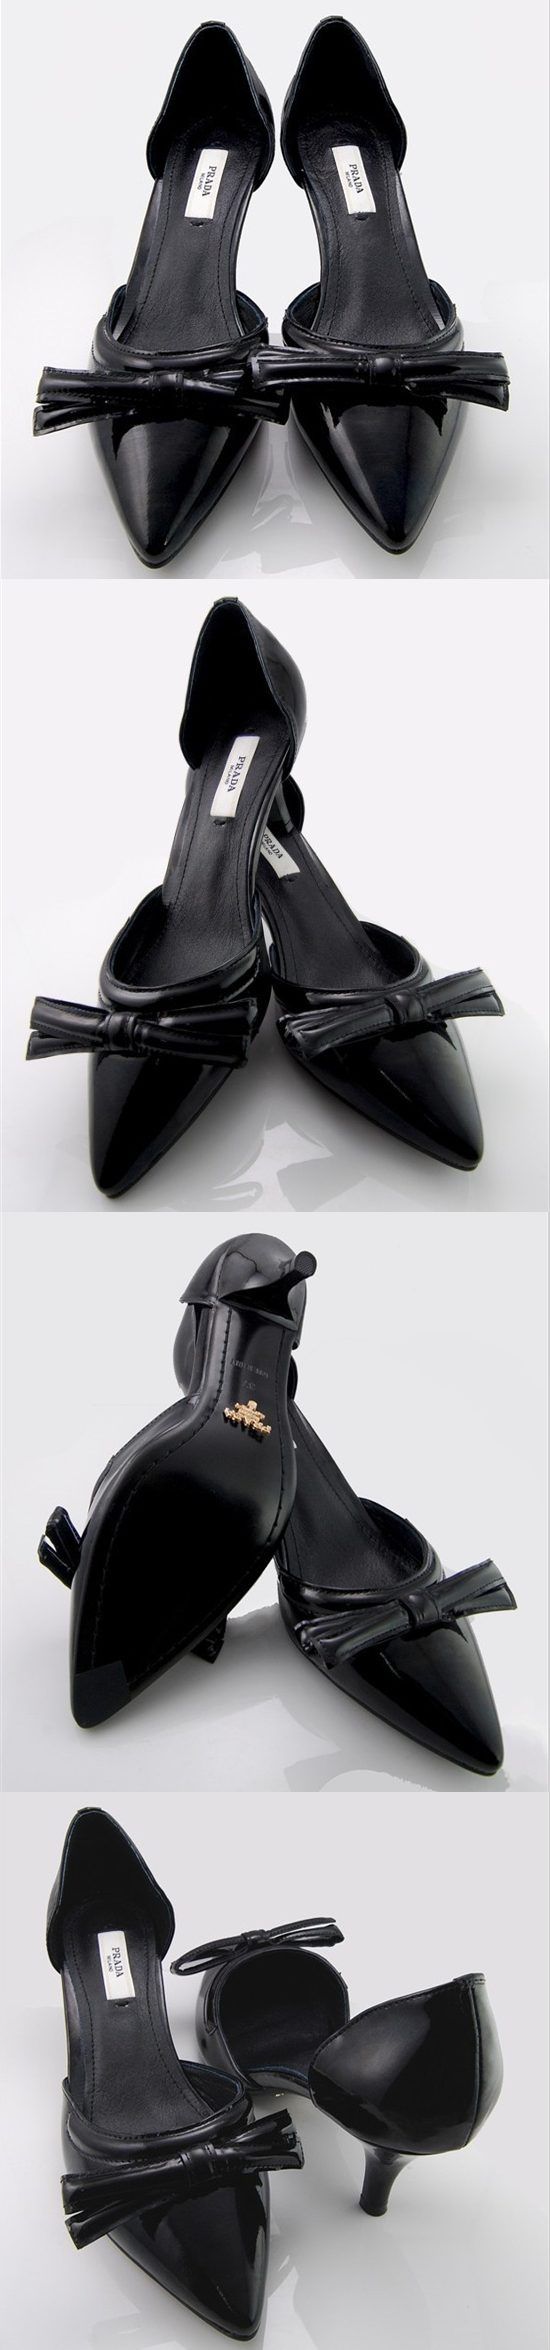 ブランド通販PRADA ハイヒール プラダ PRADA 革靴 パンプス ブラック 2061激安屋-ブランドコピー